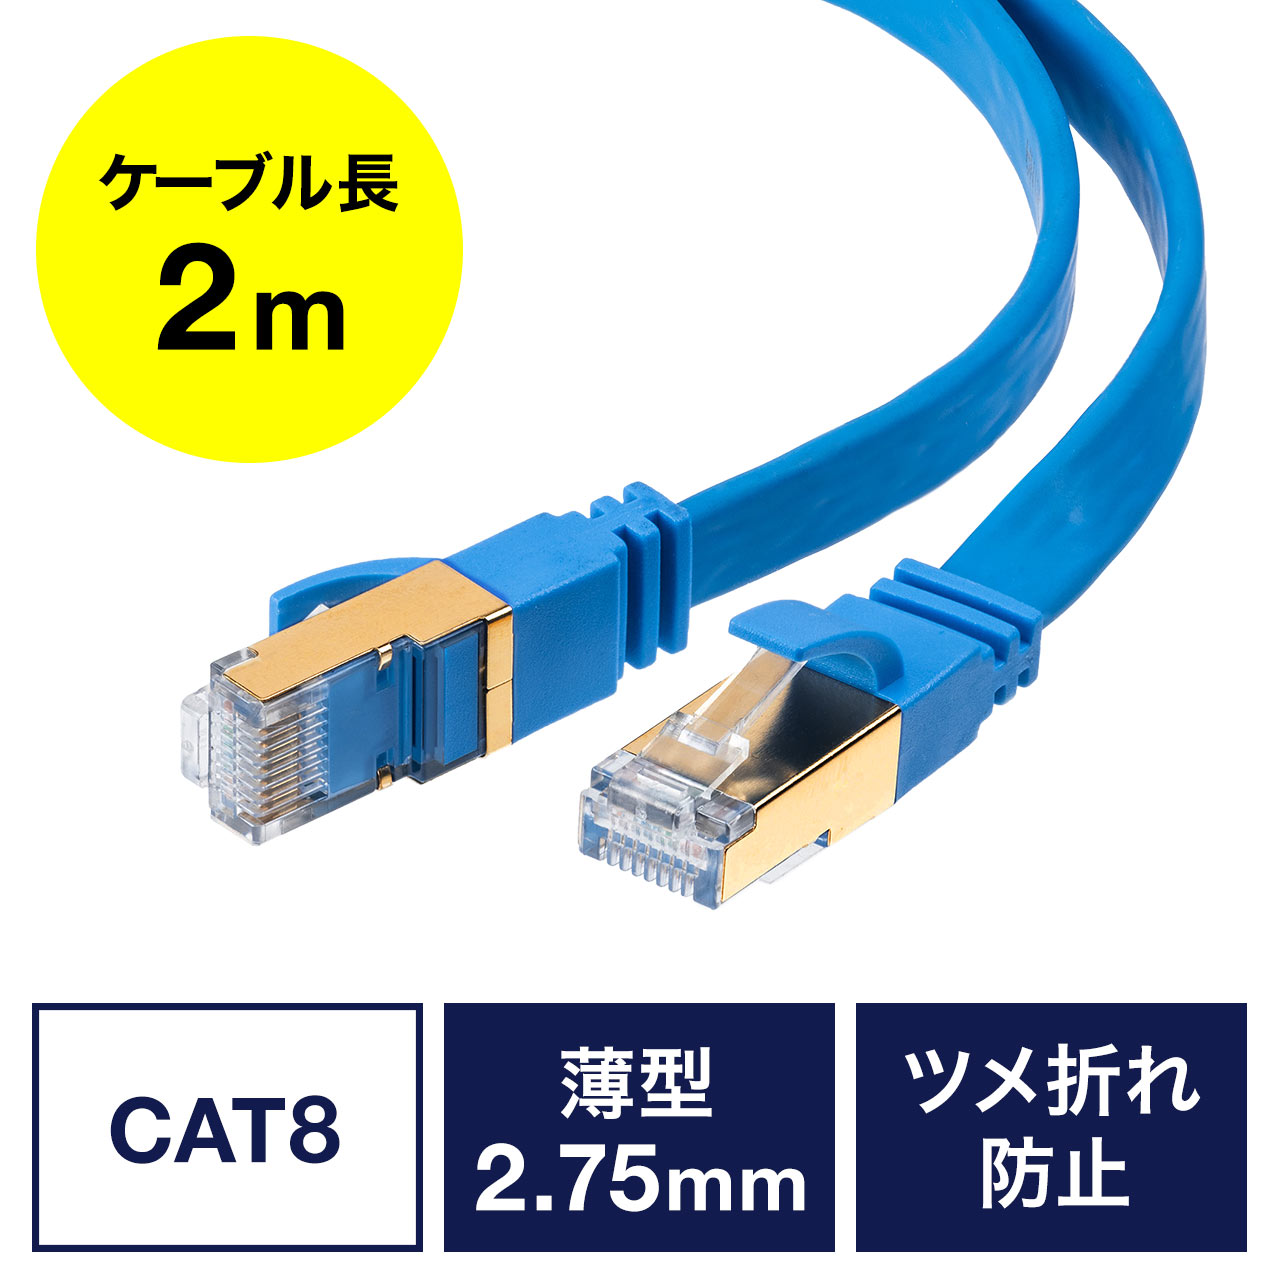 CAT8 LANケーブル 2000MHz 超高速インターネットケーブル 通販